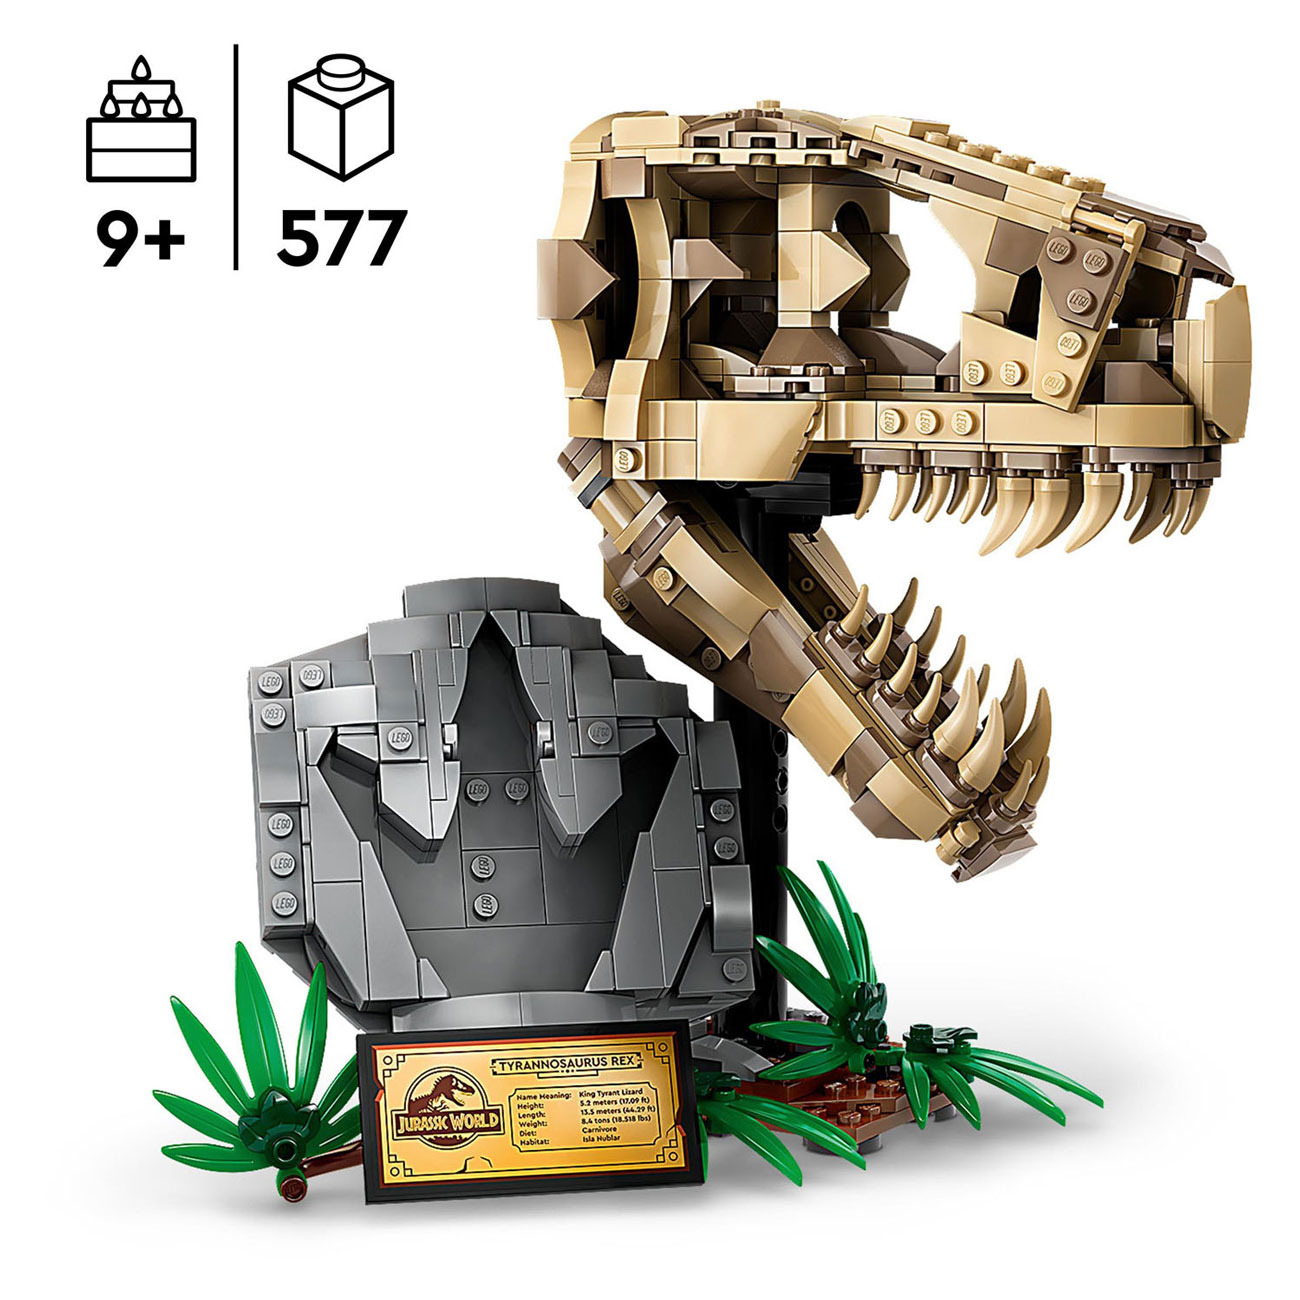 LEGO Jurassic World 76964 Dinosaurierfossilien: T-Rex-Schädel